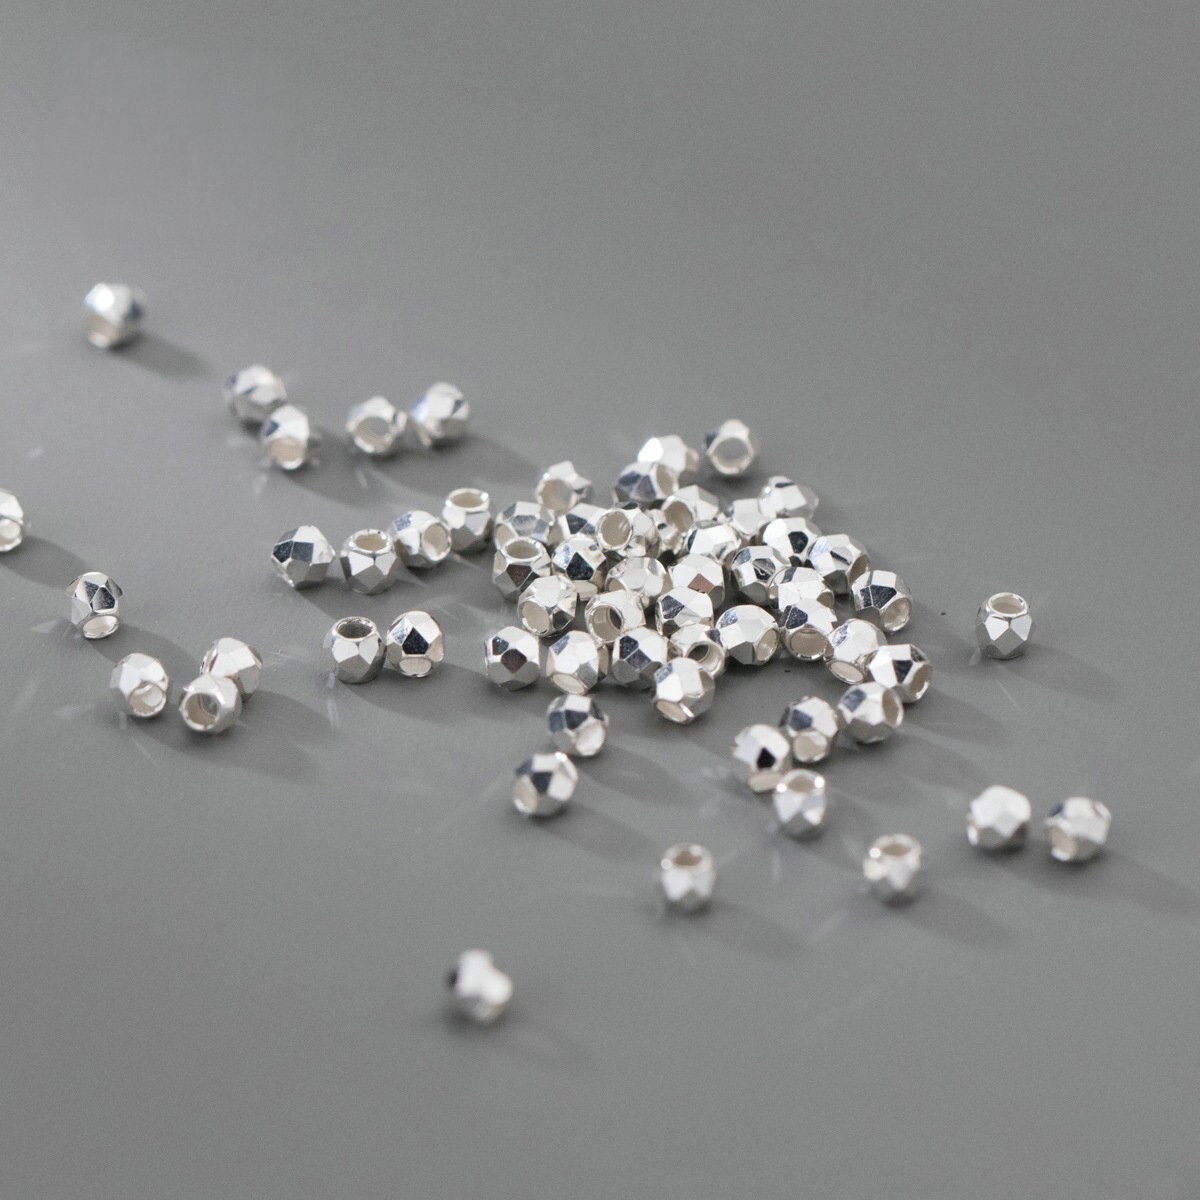 Yooperlite Beads 4mm 6mm 8mm 10mm 12mm Yooperlite Crystal 